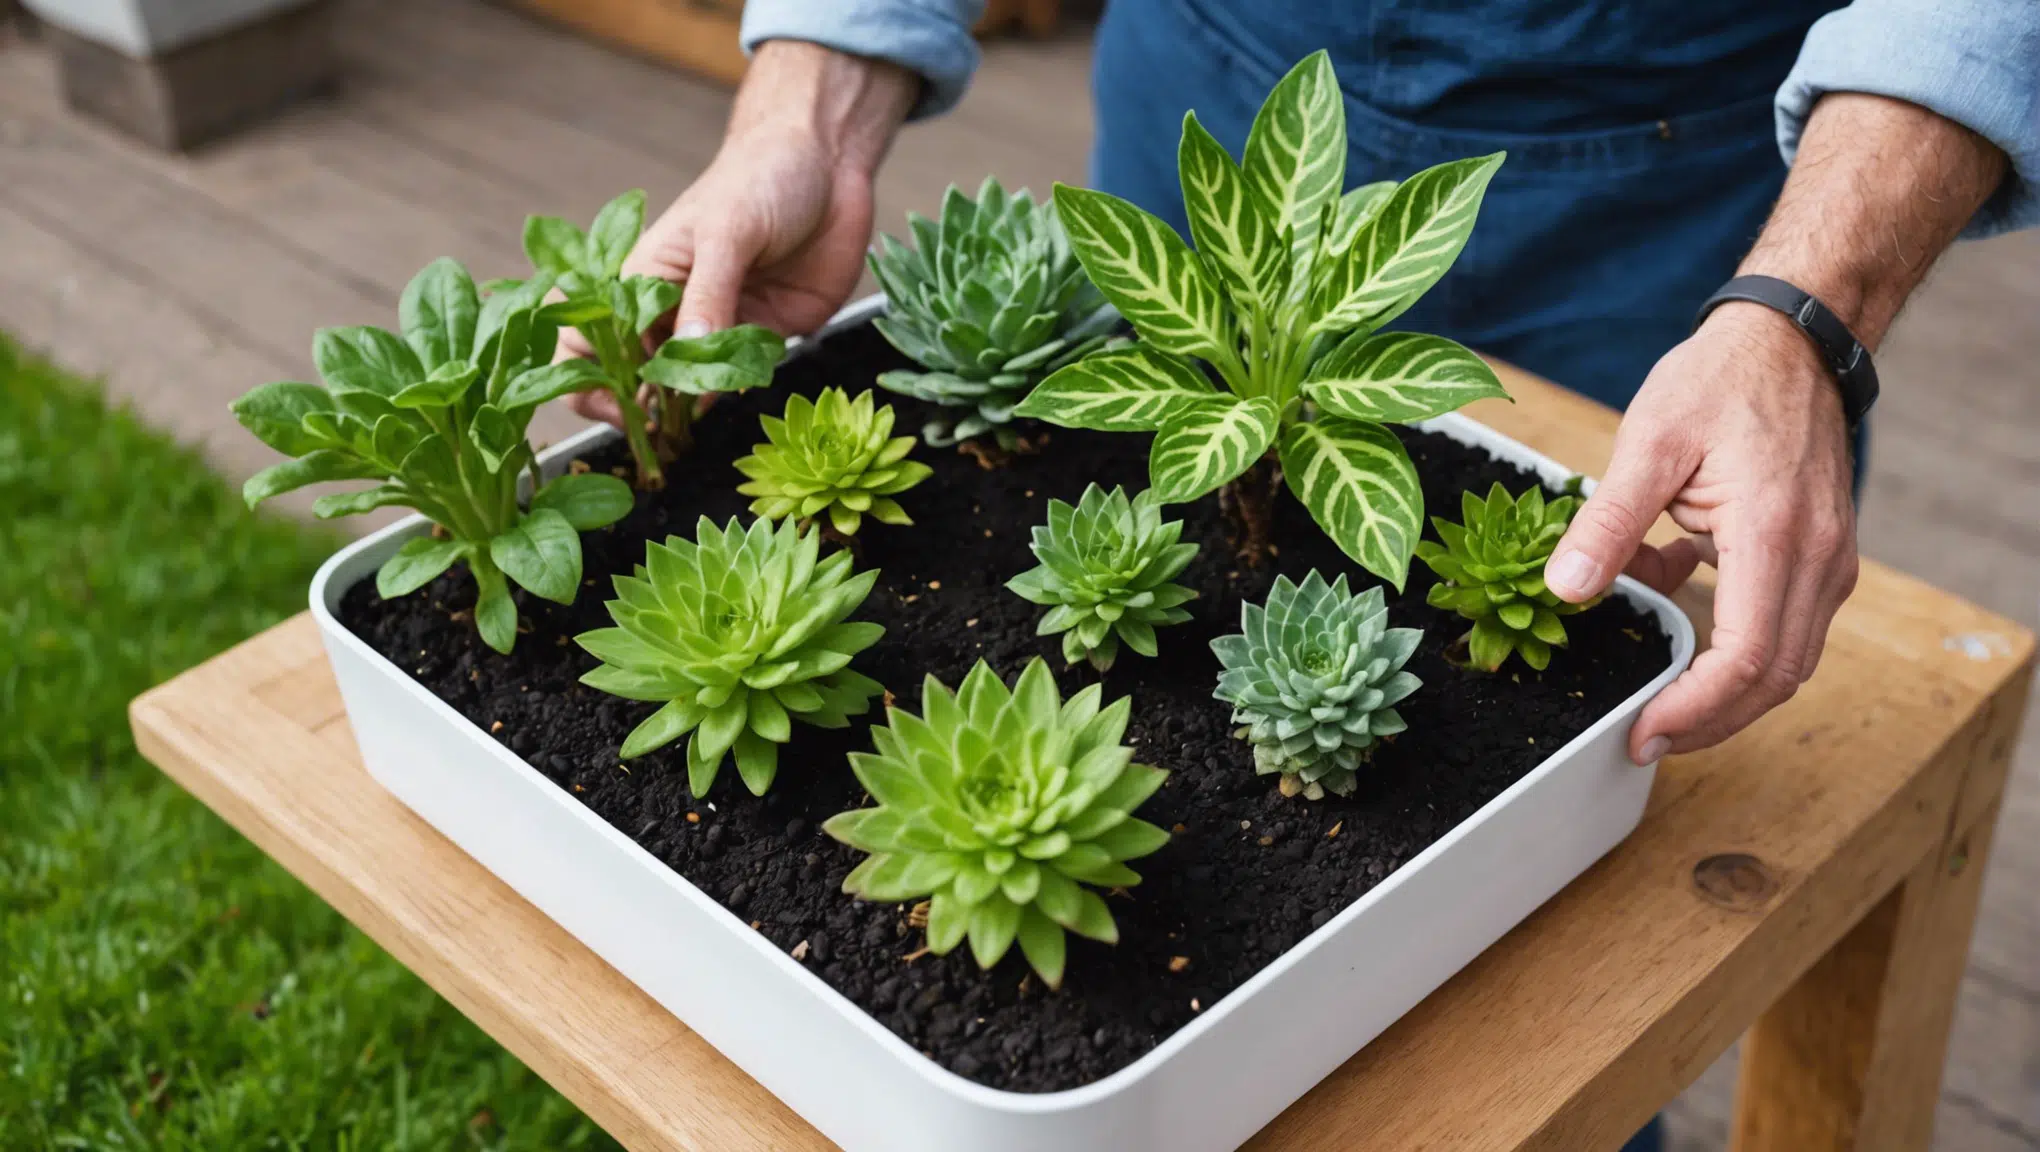 découvrez des astuces simples et efficaces pour garder vos plantes toujours en pleine forme avec nos conseils pratiques.